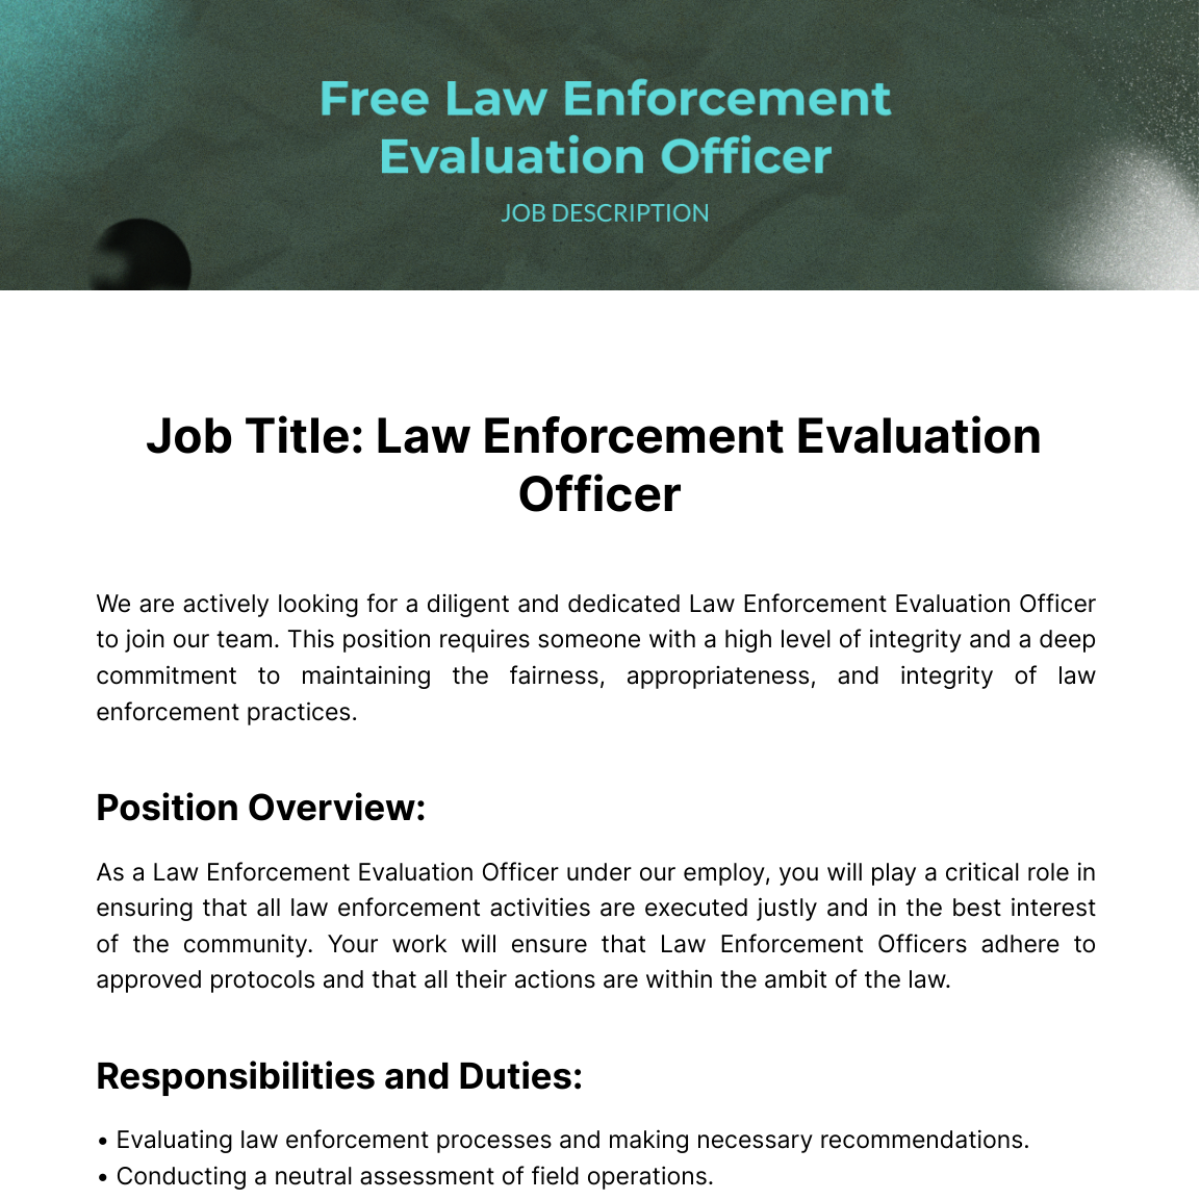 Law Enforcement Evaluation Officer Job Description Template